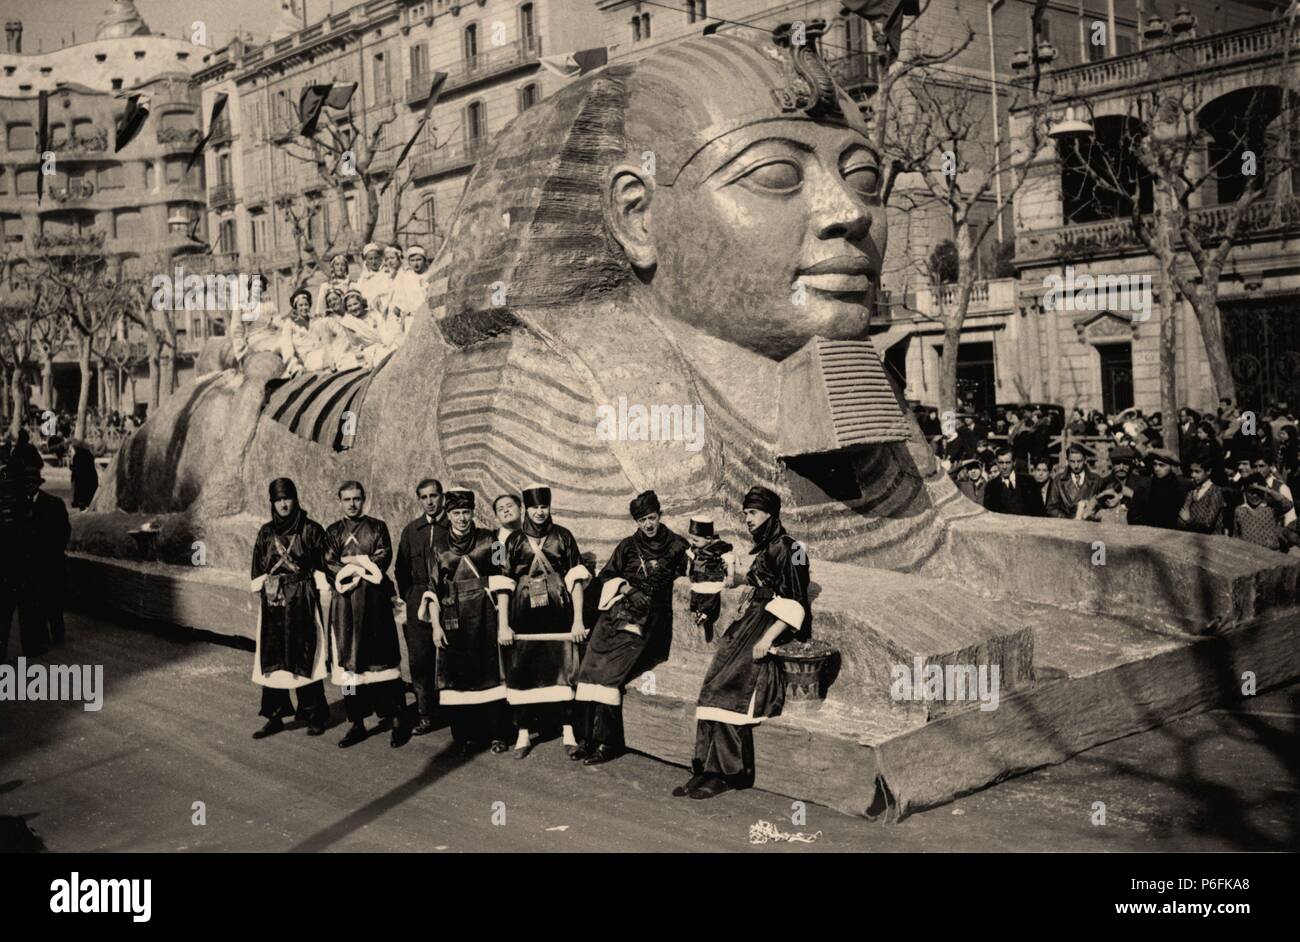 España. Barcelona. La Esfinge robada, primer premio de carrozas de la Cabalgata de Carnaval en el Paseo de Gracia del año 1934. Stock Photo